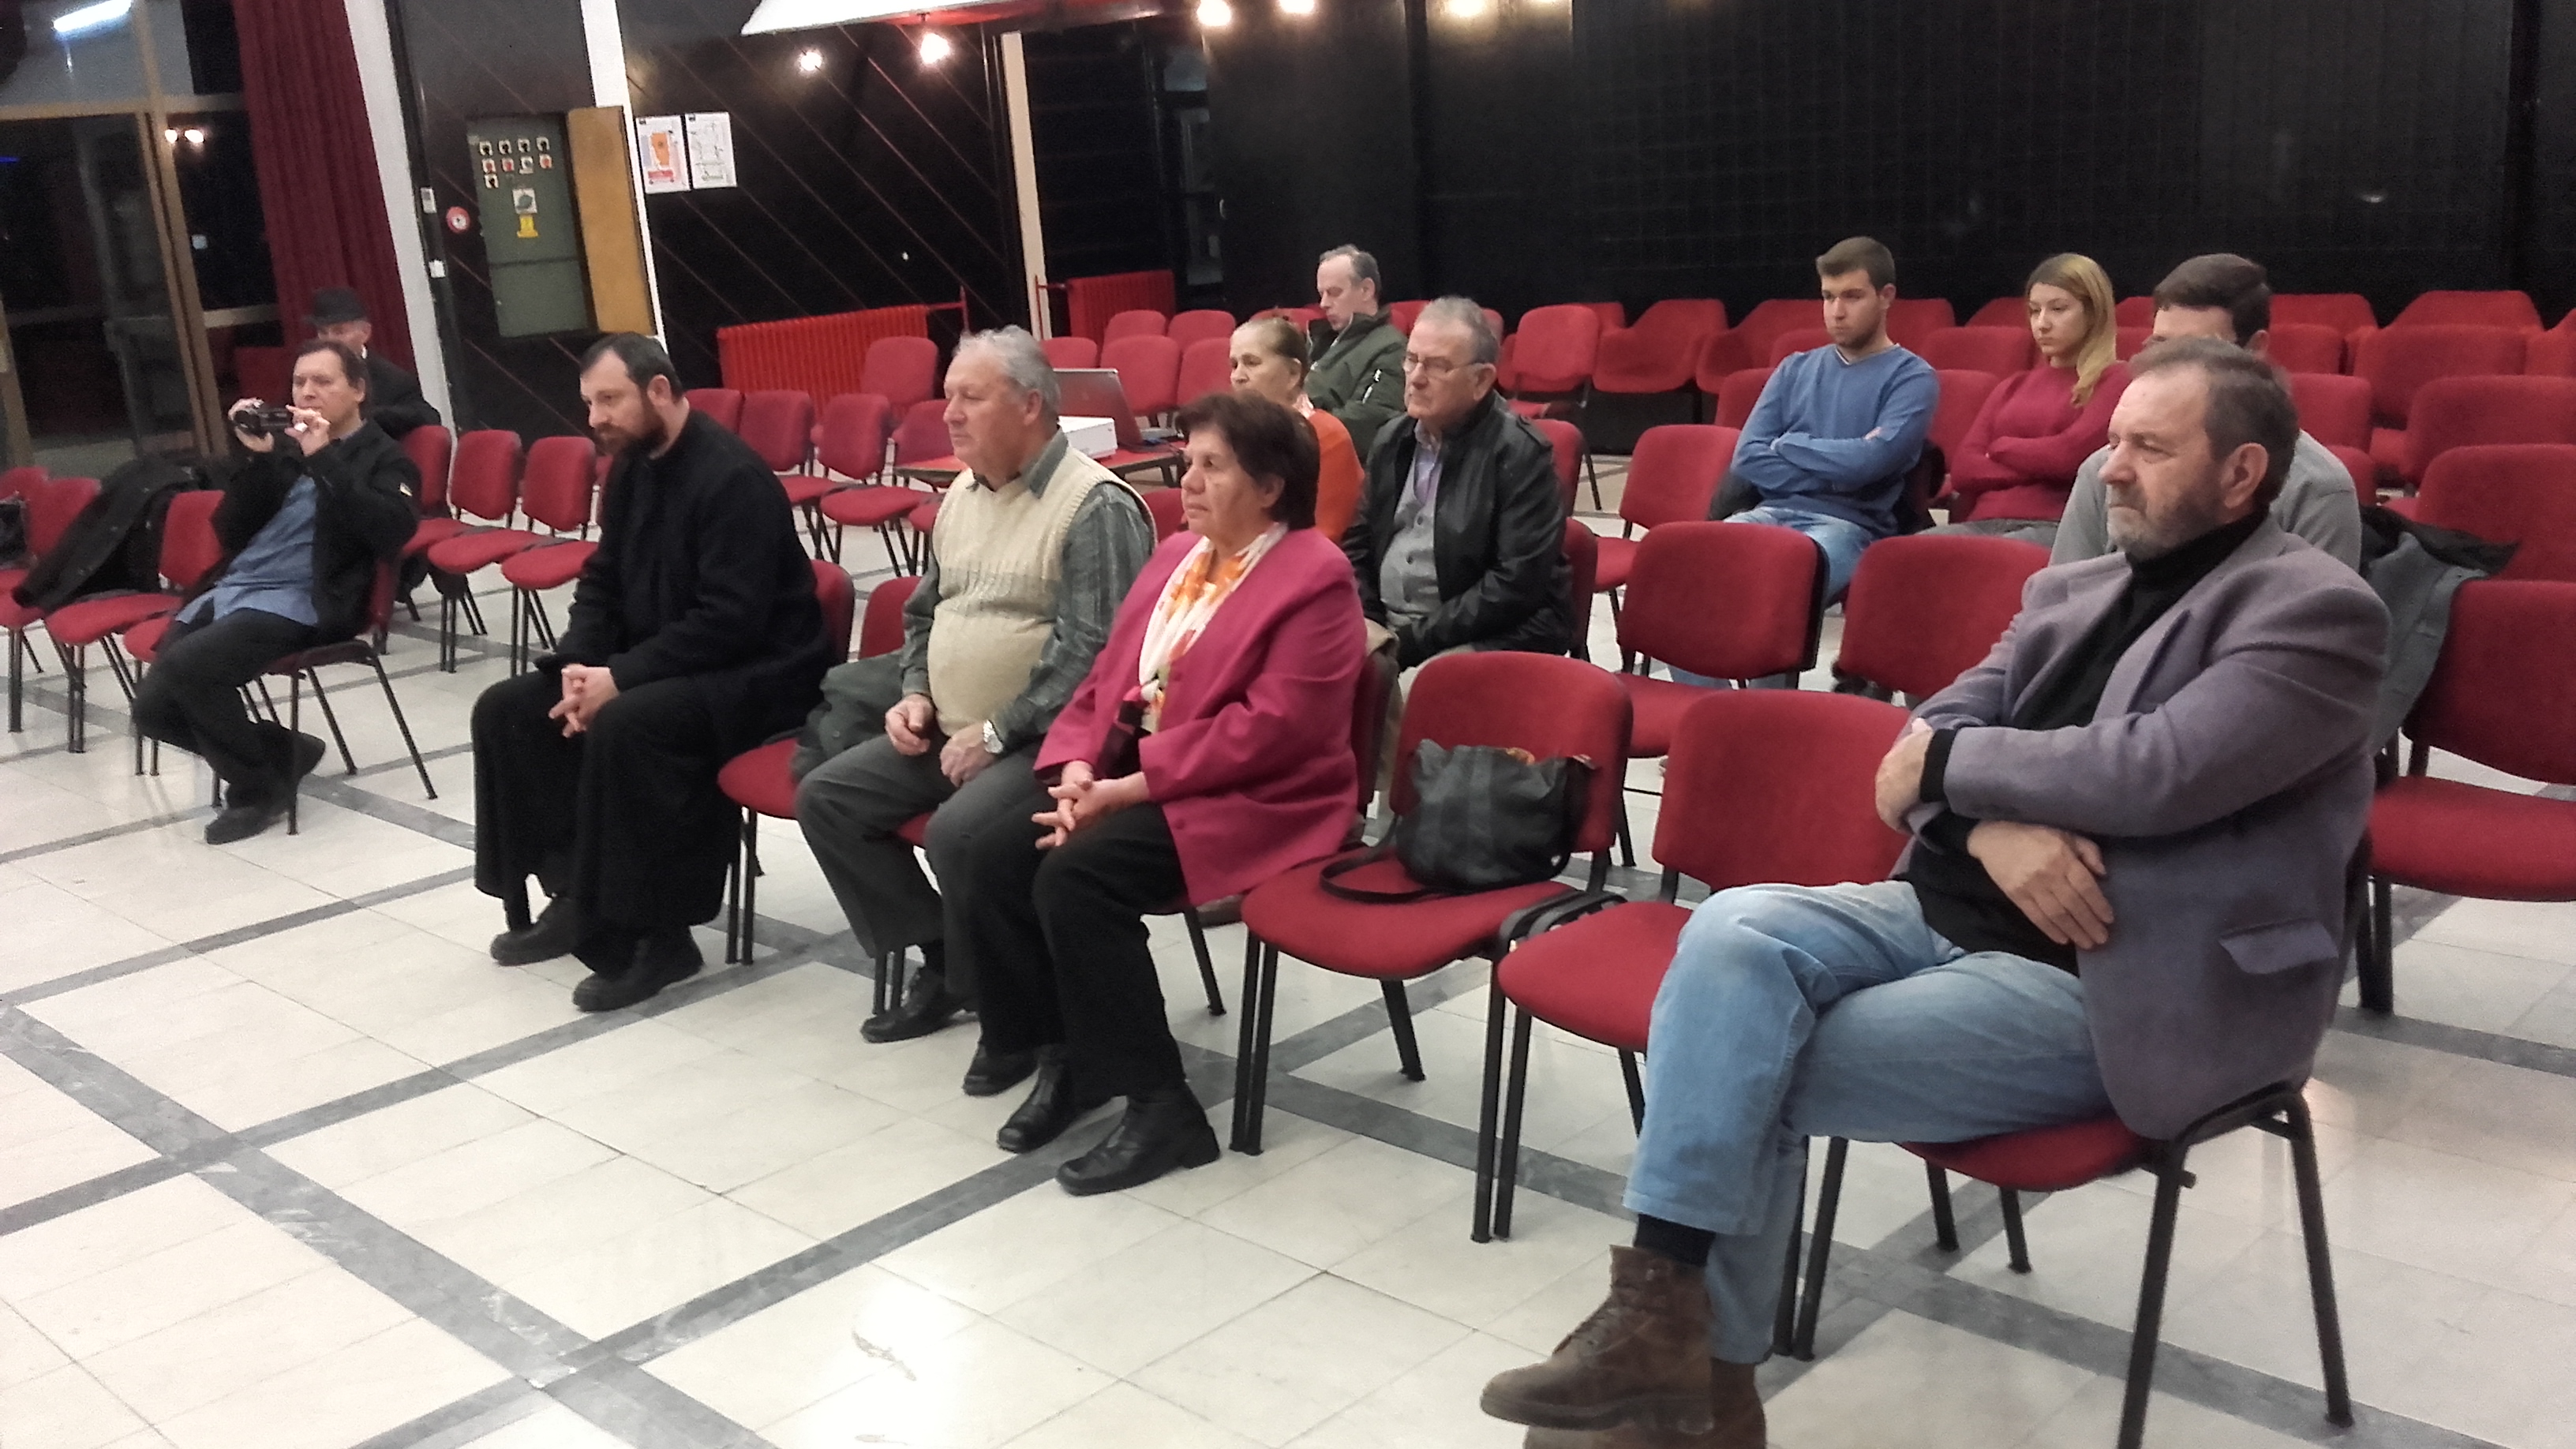 Одржано предавање на тему “Протoјереј Марко Шаула и његово време” у КЦ-у Рума